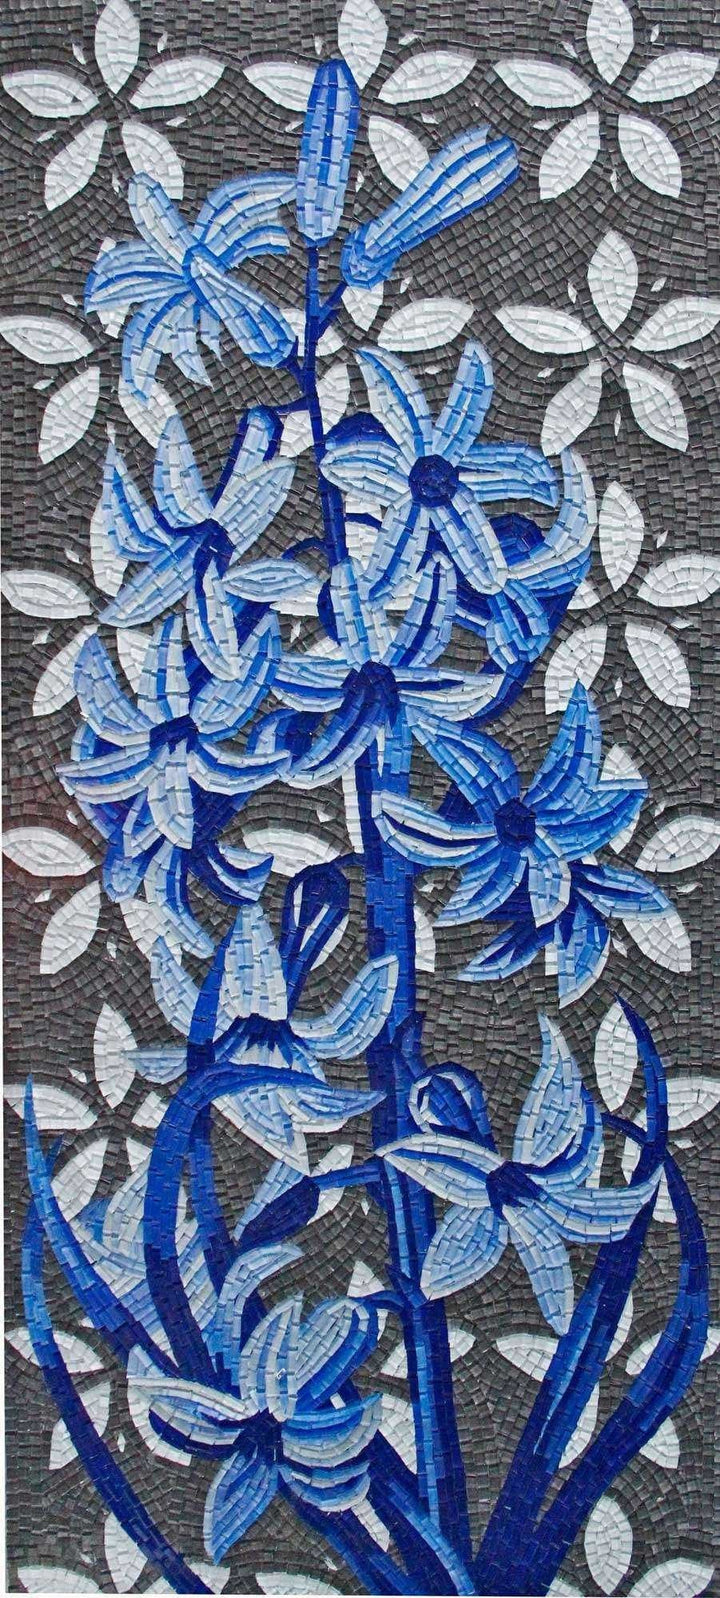 Цветочный дизайн мозаики - Touch Of Blue Mozaico